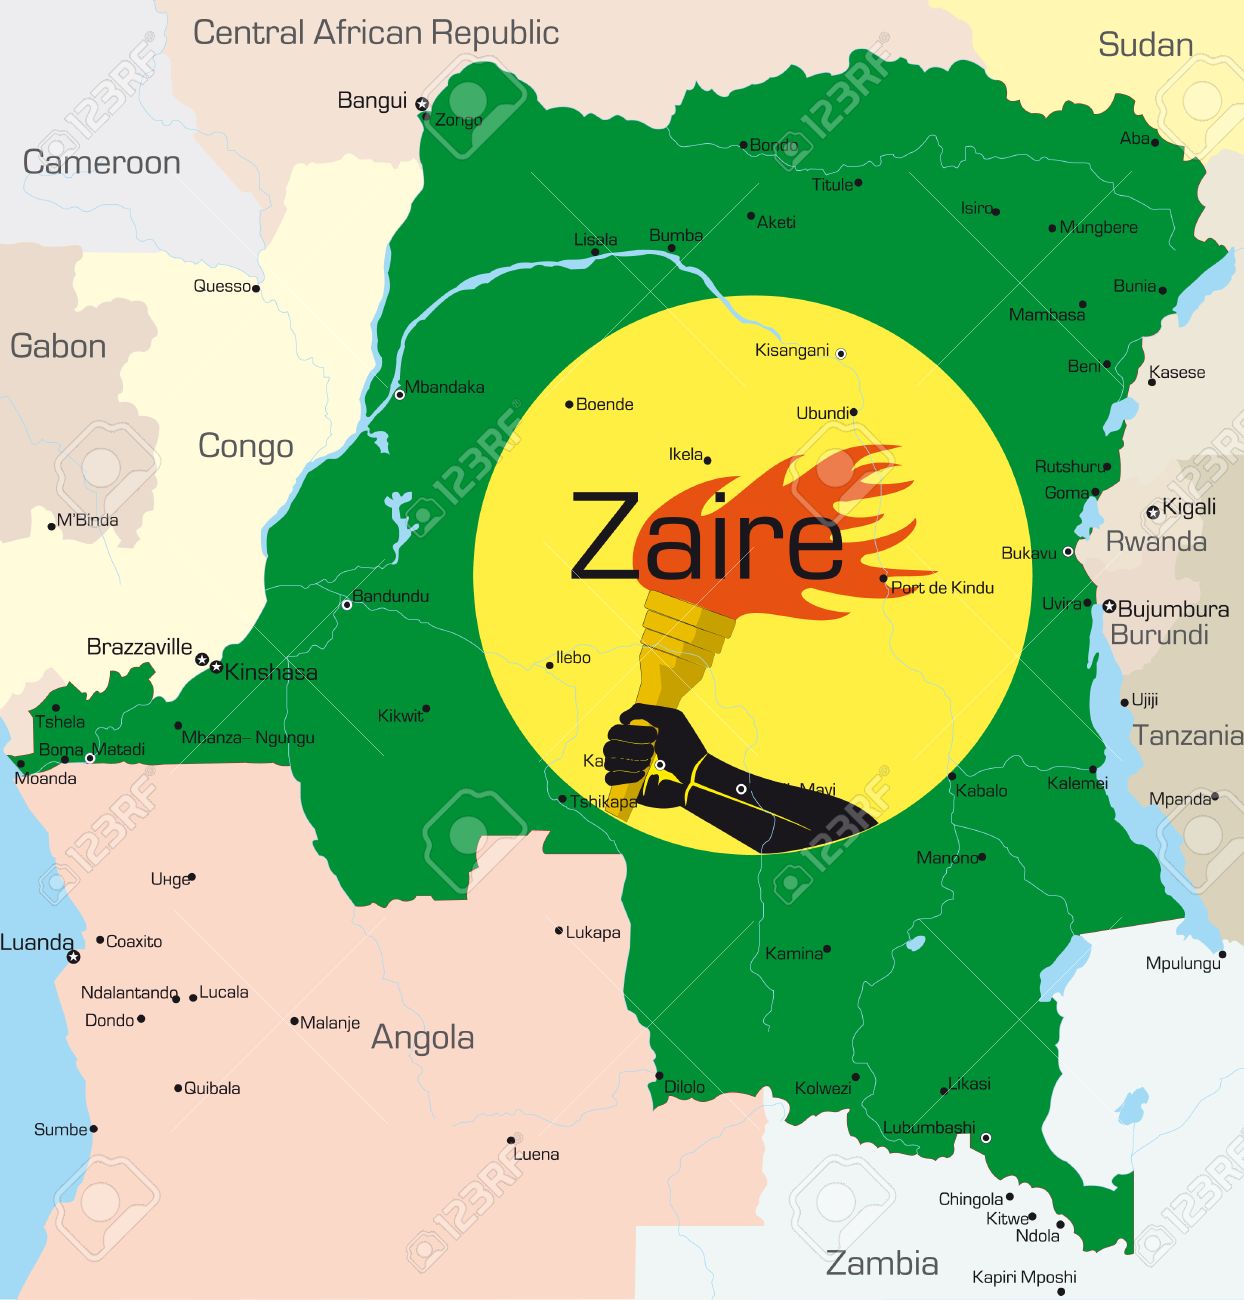 Le 27 octobre 1971, la République démocratique du Congo devient Zaïre. – Babunga raconte…